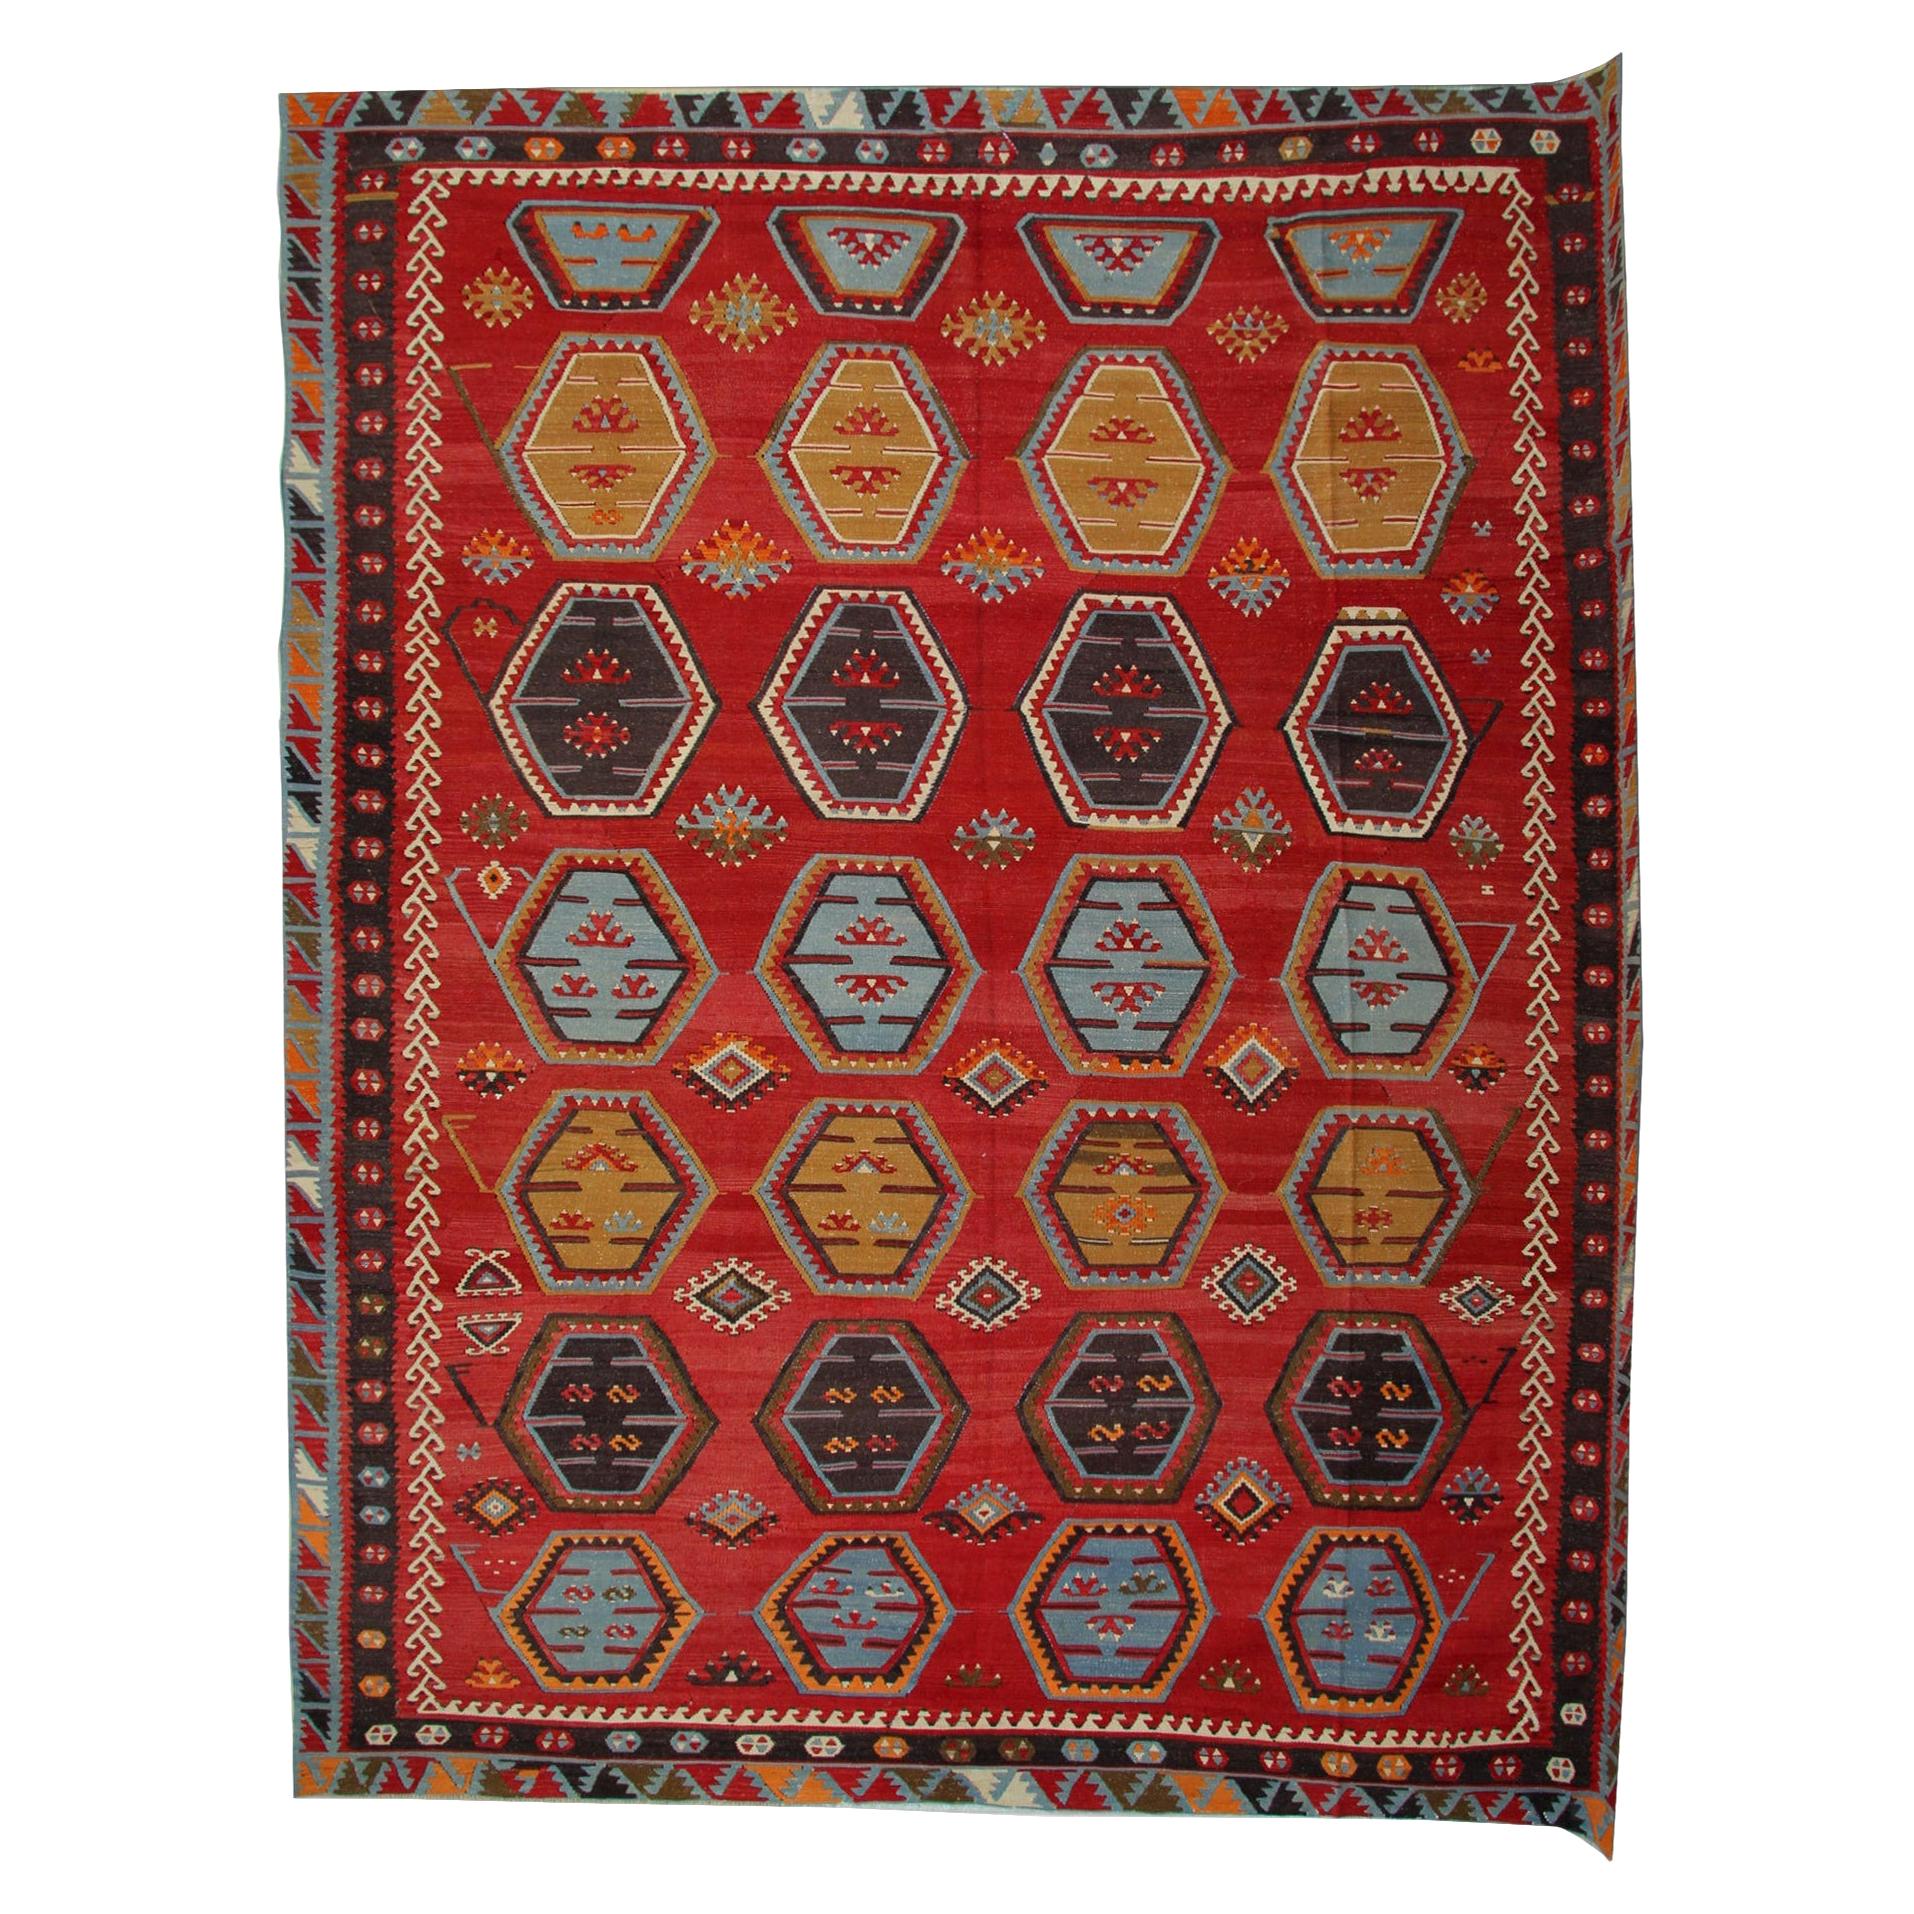 Handgefertigter orientalischer Kelims-Teppich, antiker Teppich, anatolischer türkischer Kelim-Teppich